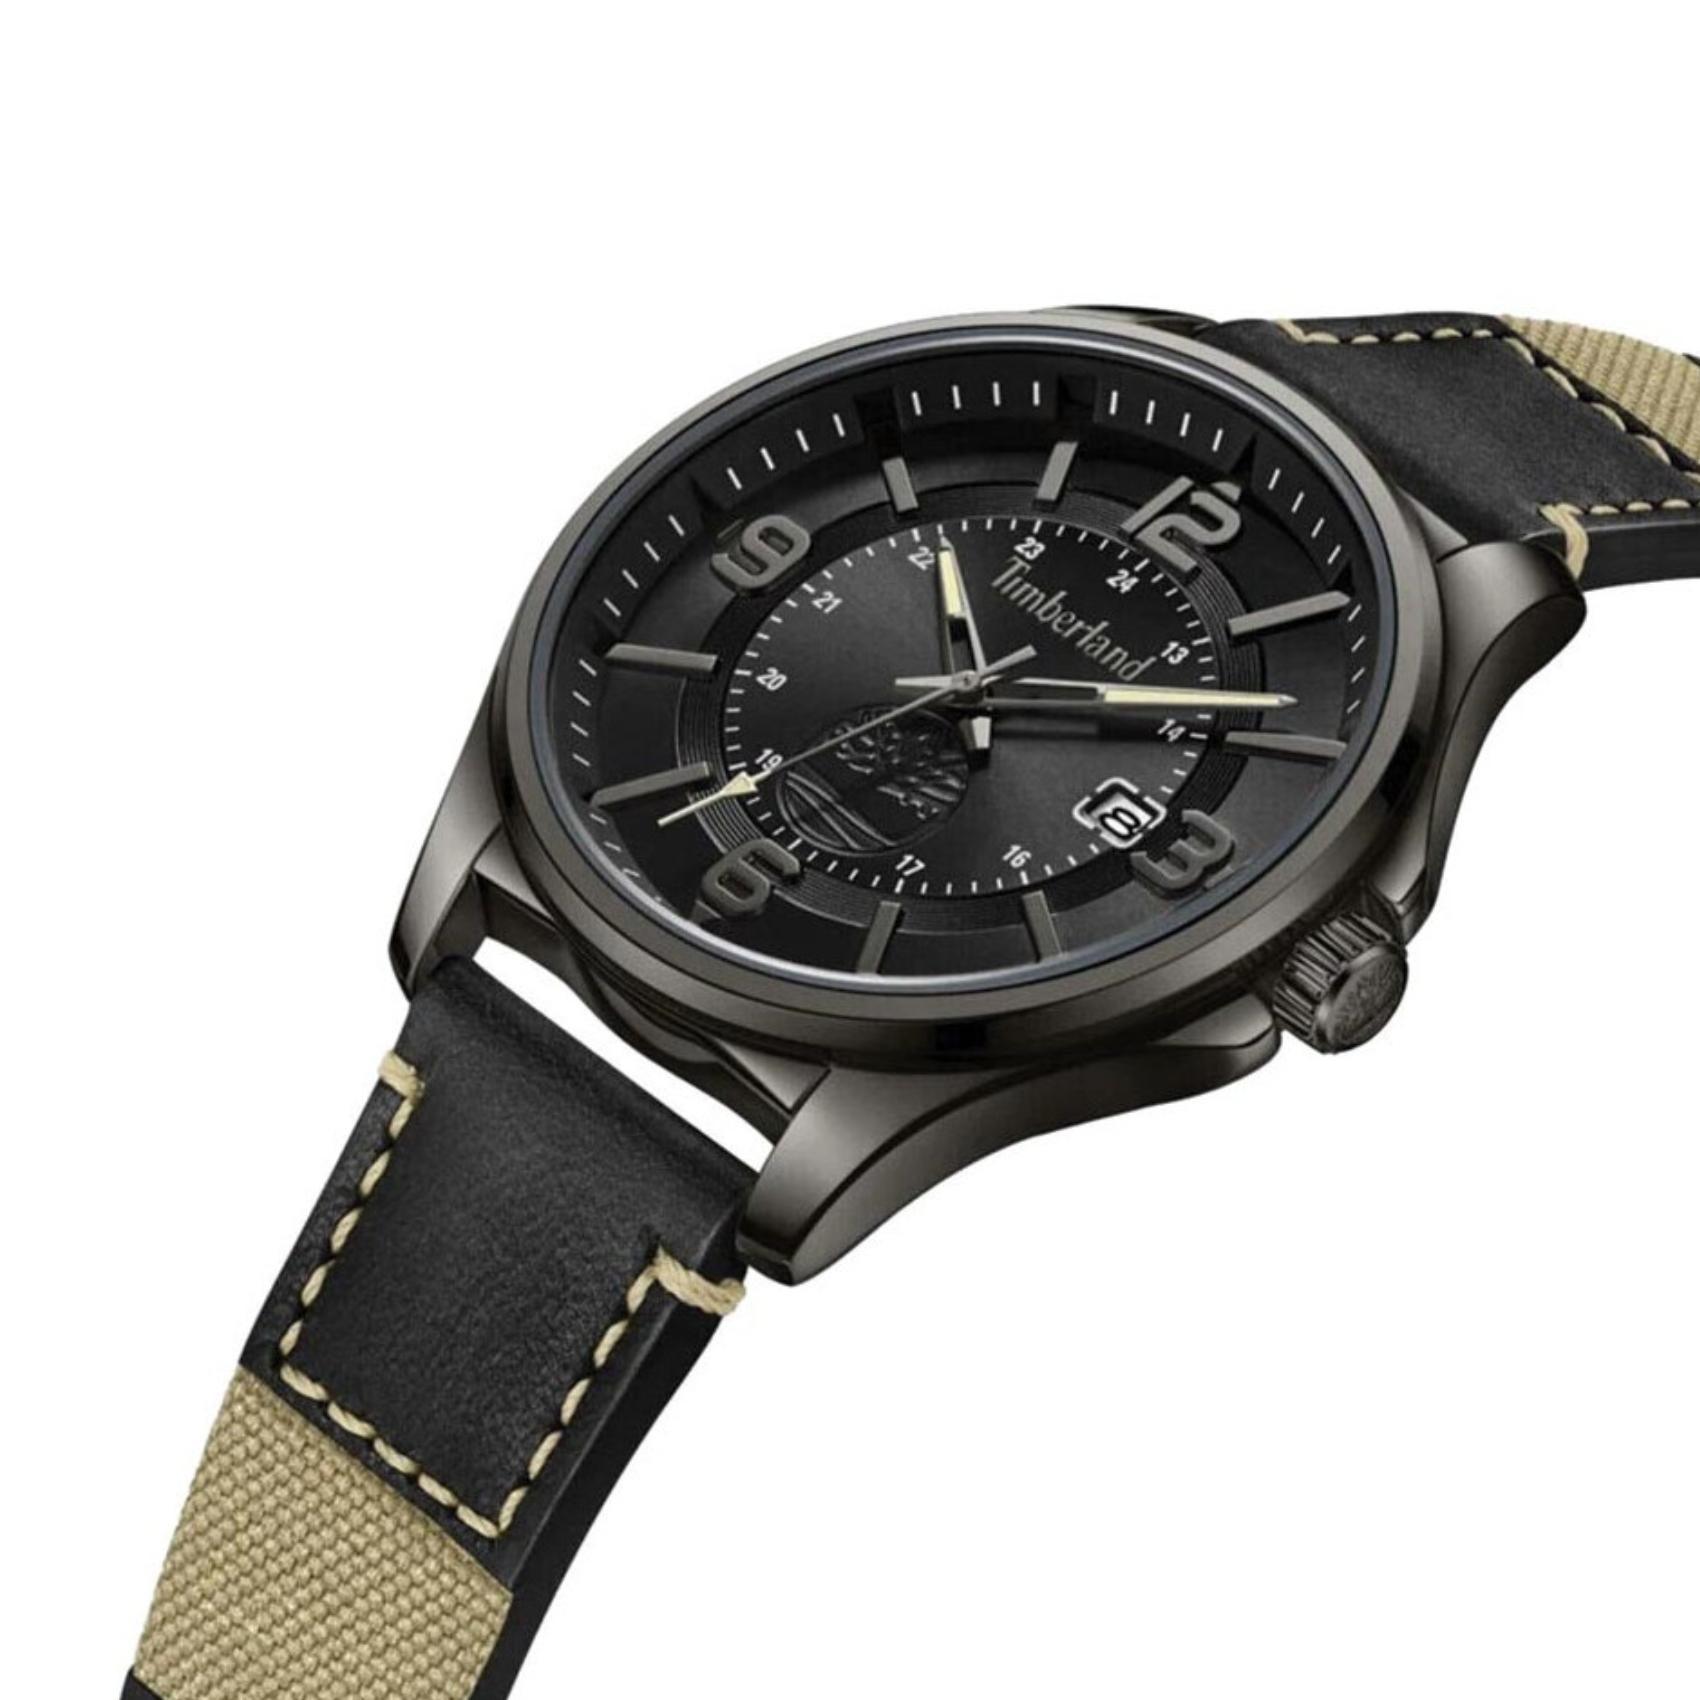 Αντρικό ρολόι Timberland Tyngsborough TDWGB2183001 με μαύρο δερμάτινο λουράκι και μαύρο καντράν διαμέτρου 45mm.